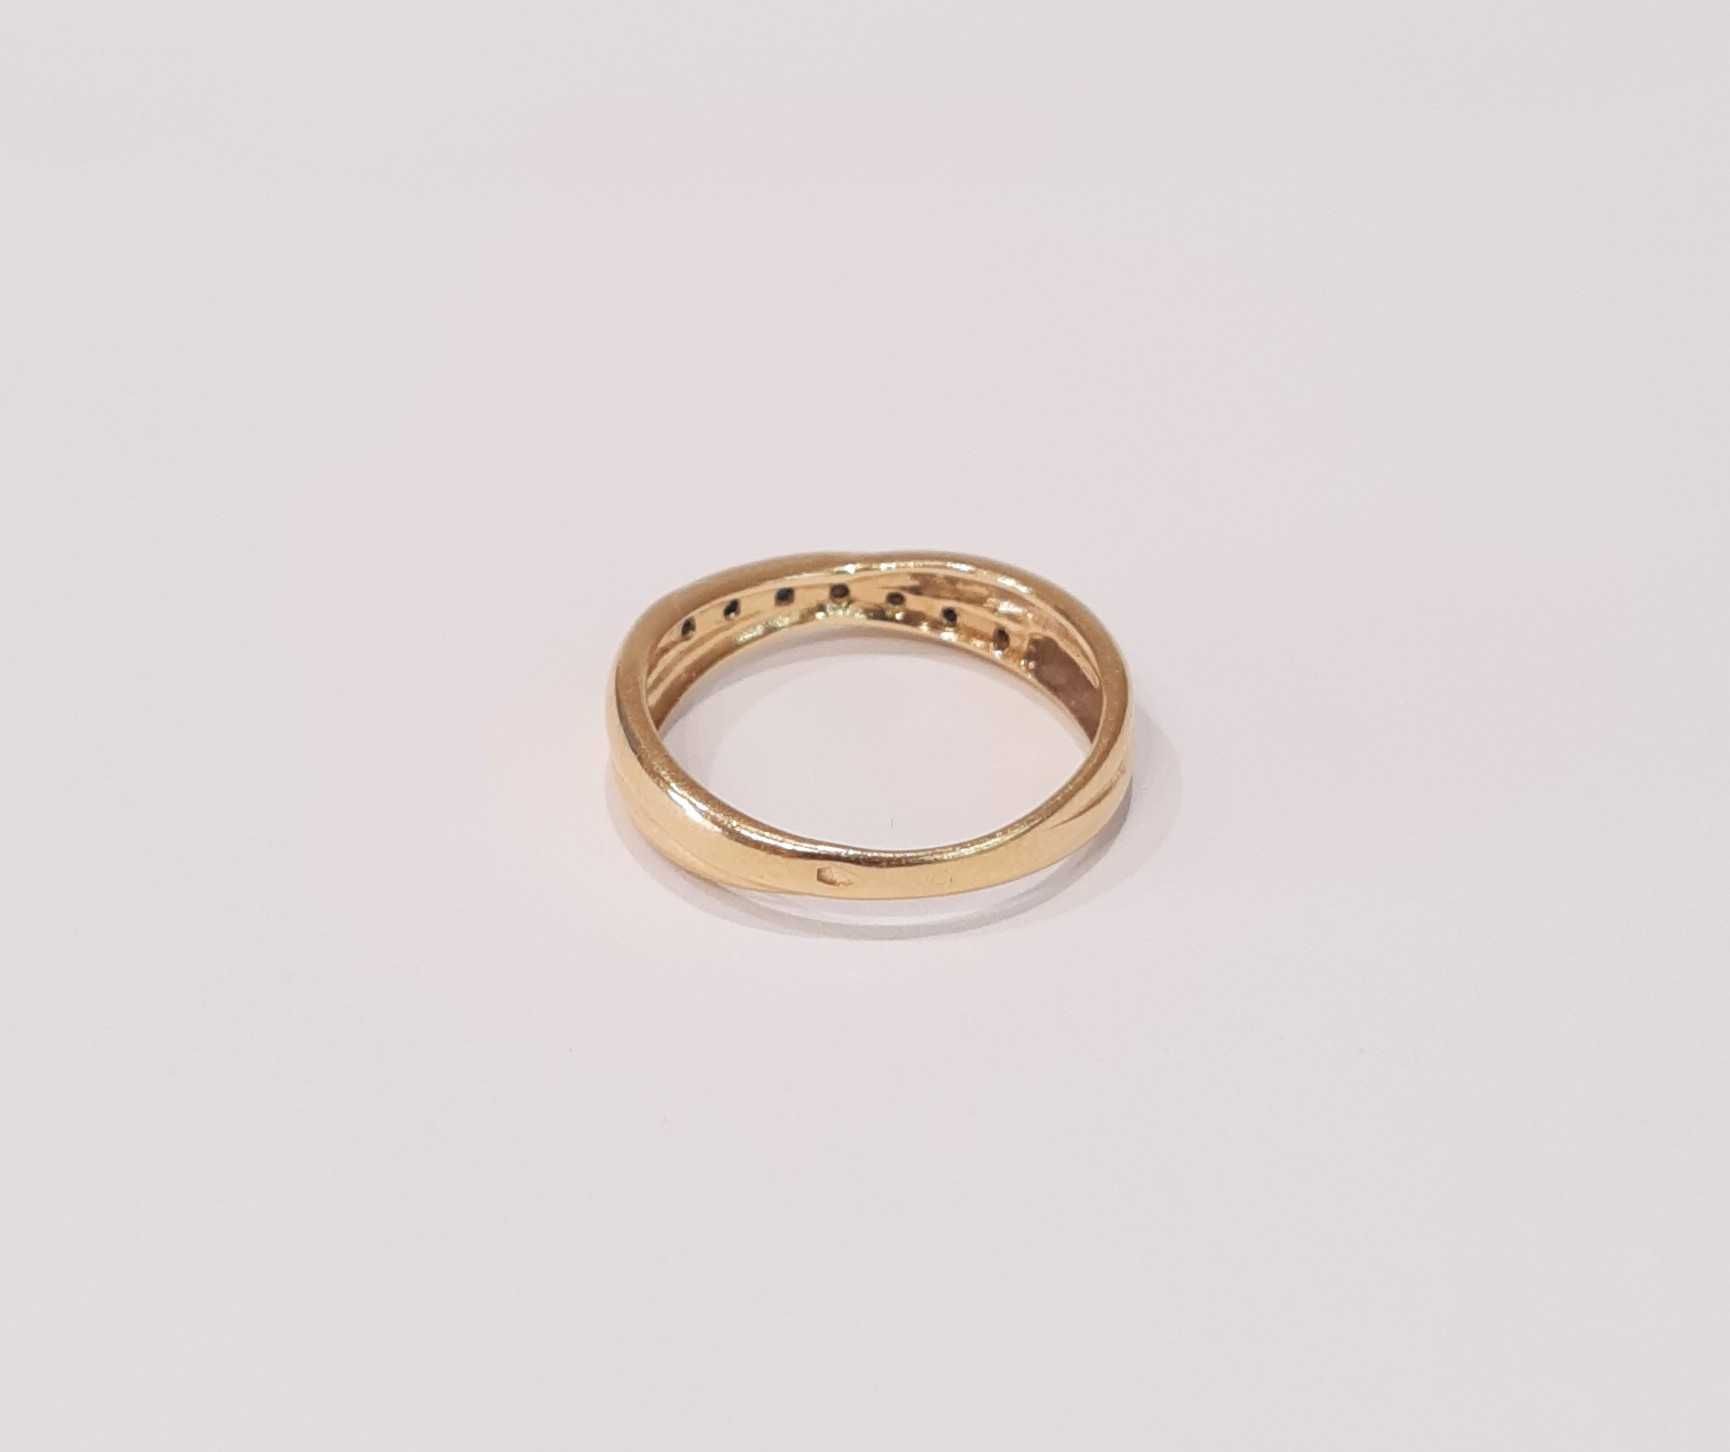 Złoty pierścionek z brylantami i szafirami r.15,5  0,06 ct-3,15g/p.585